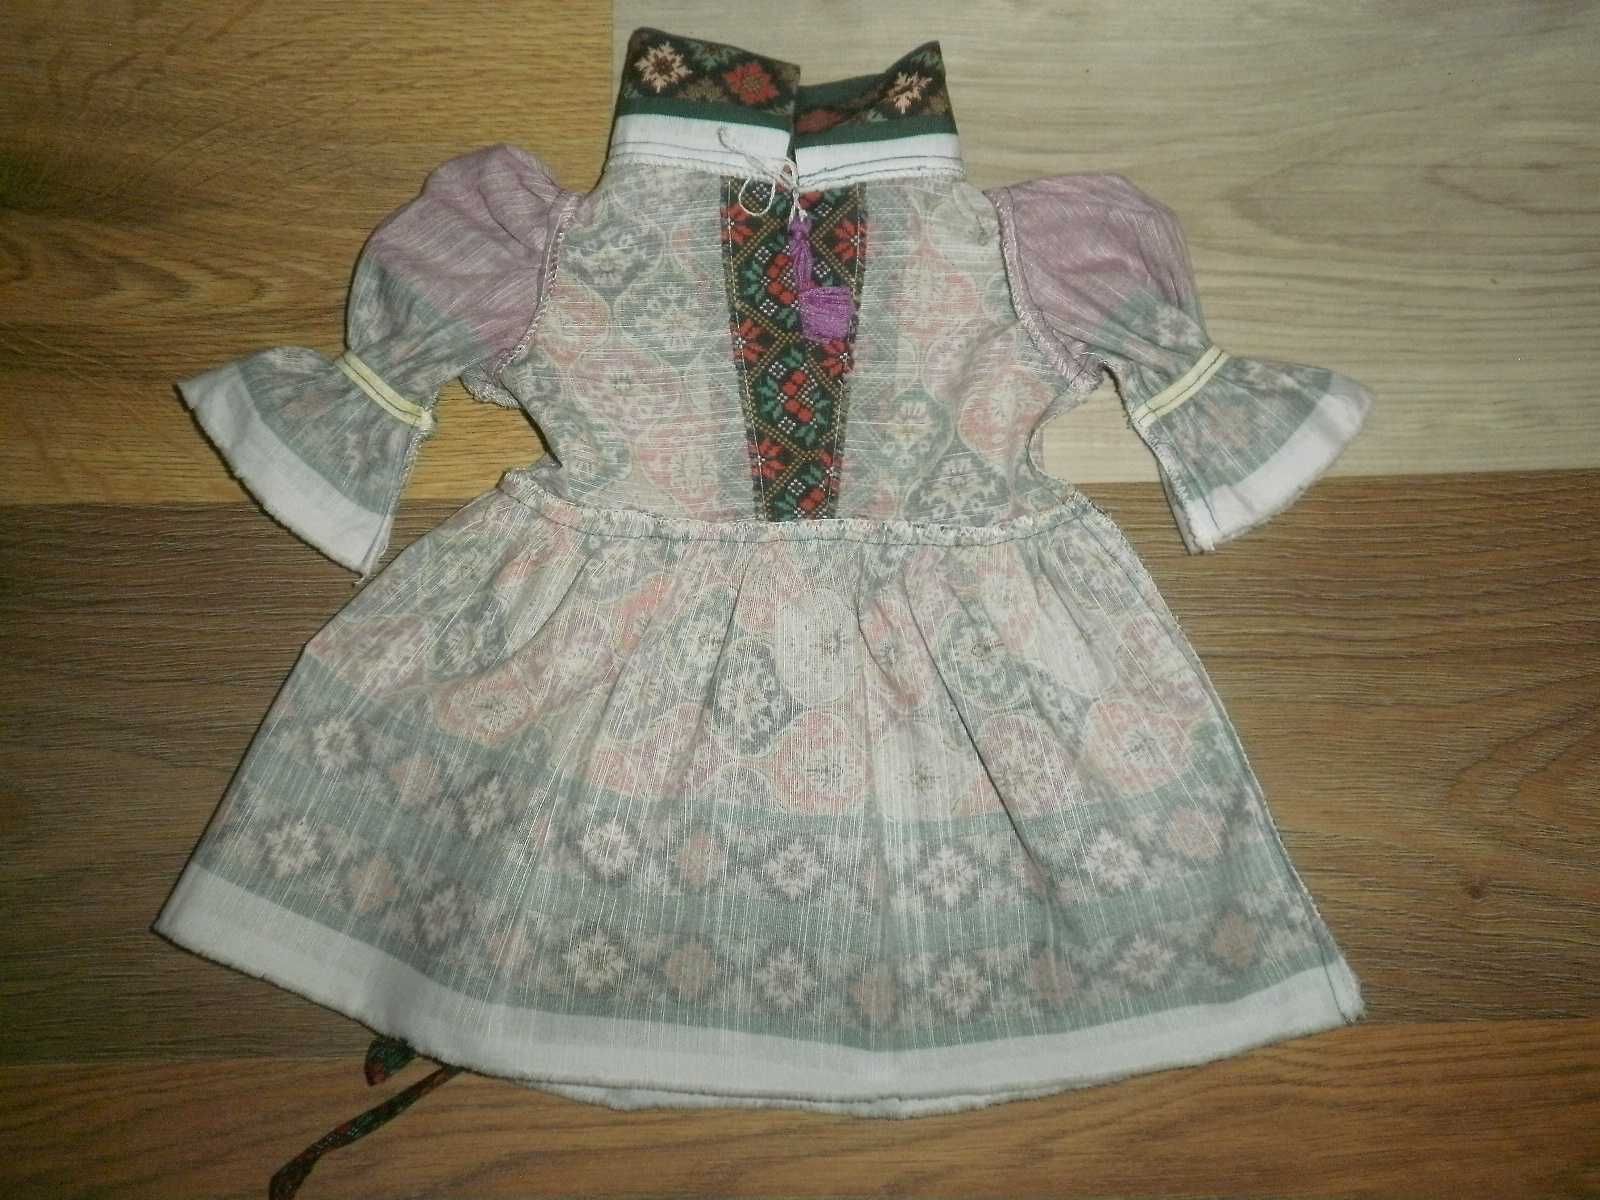 Одежда для куклы ростом до 60 см.Платье длинной 35 см.